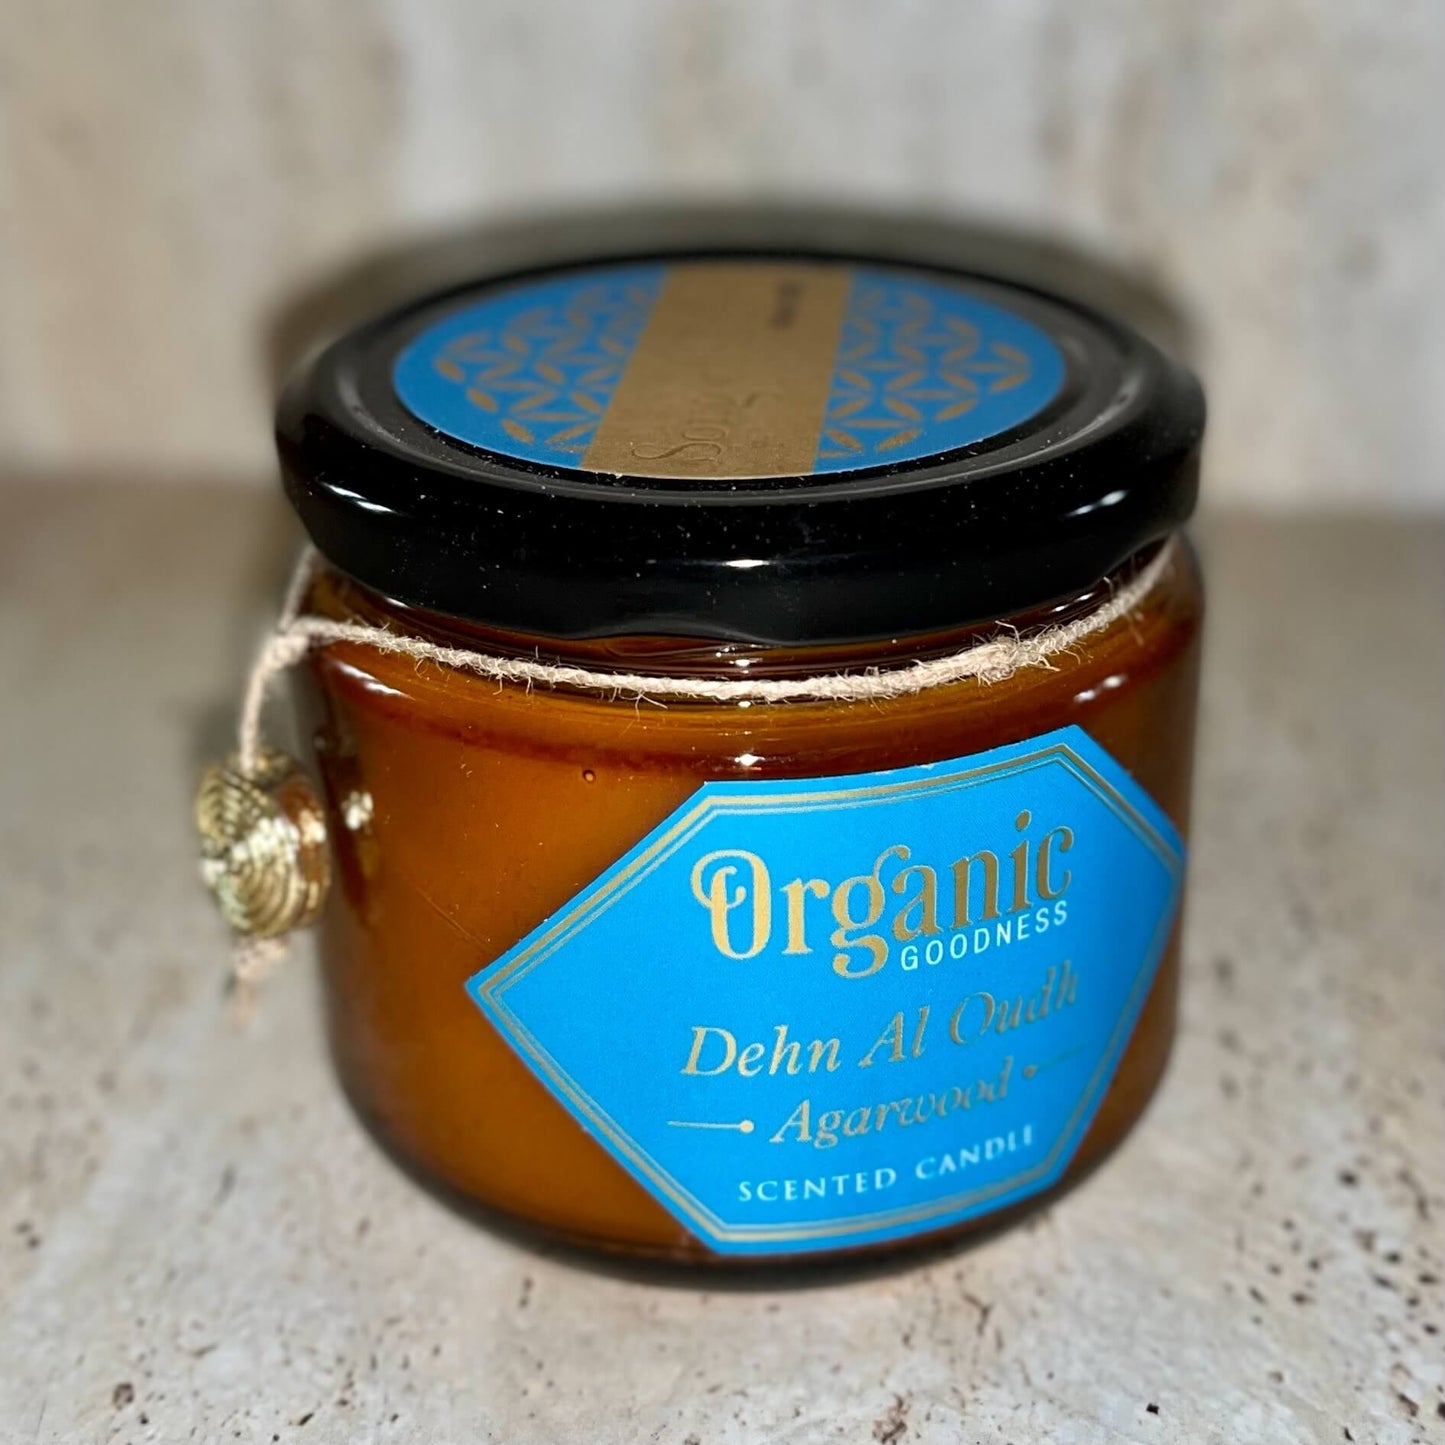 Organic Goodness Soy Candle AGARWOOD Dehn Al Oodh in Amber Glass Jar